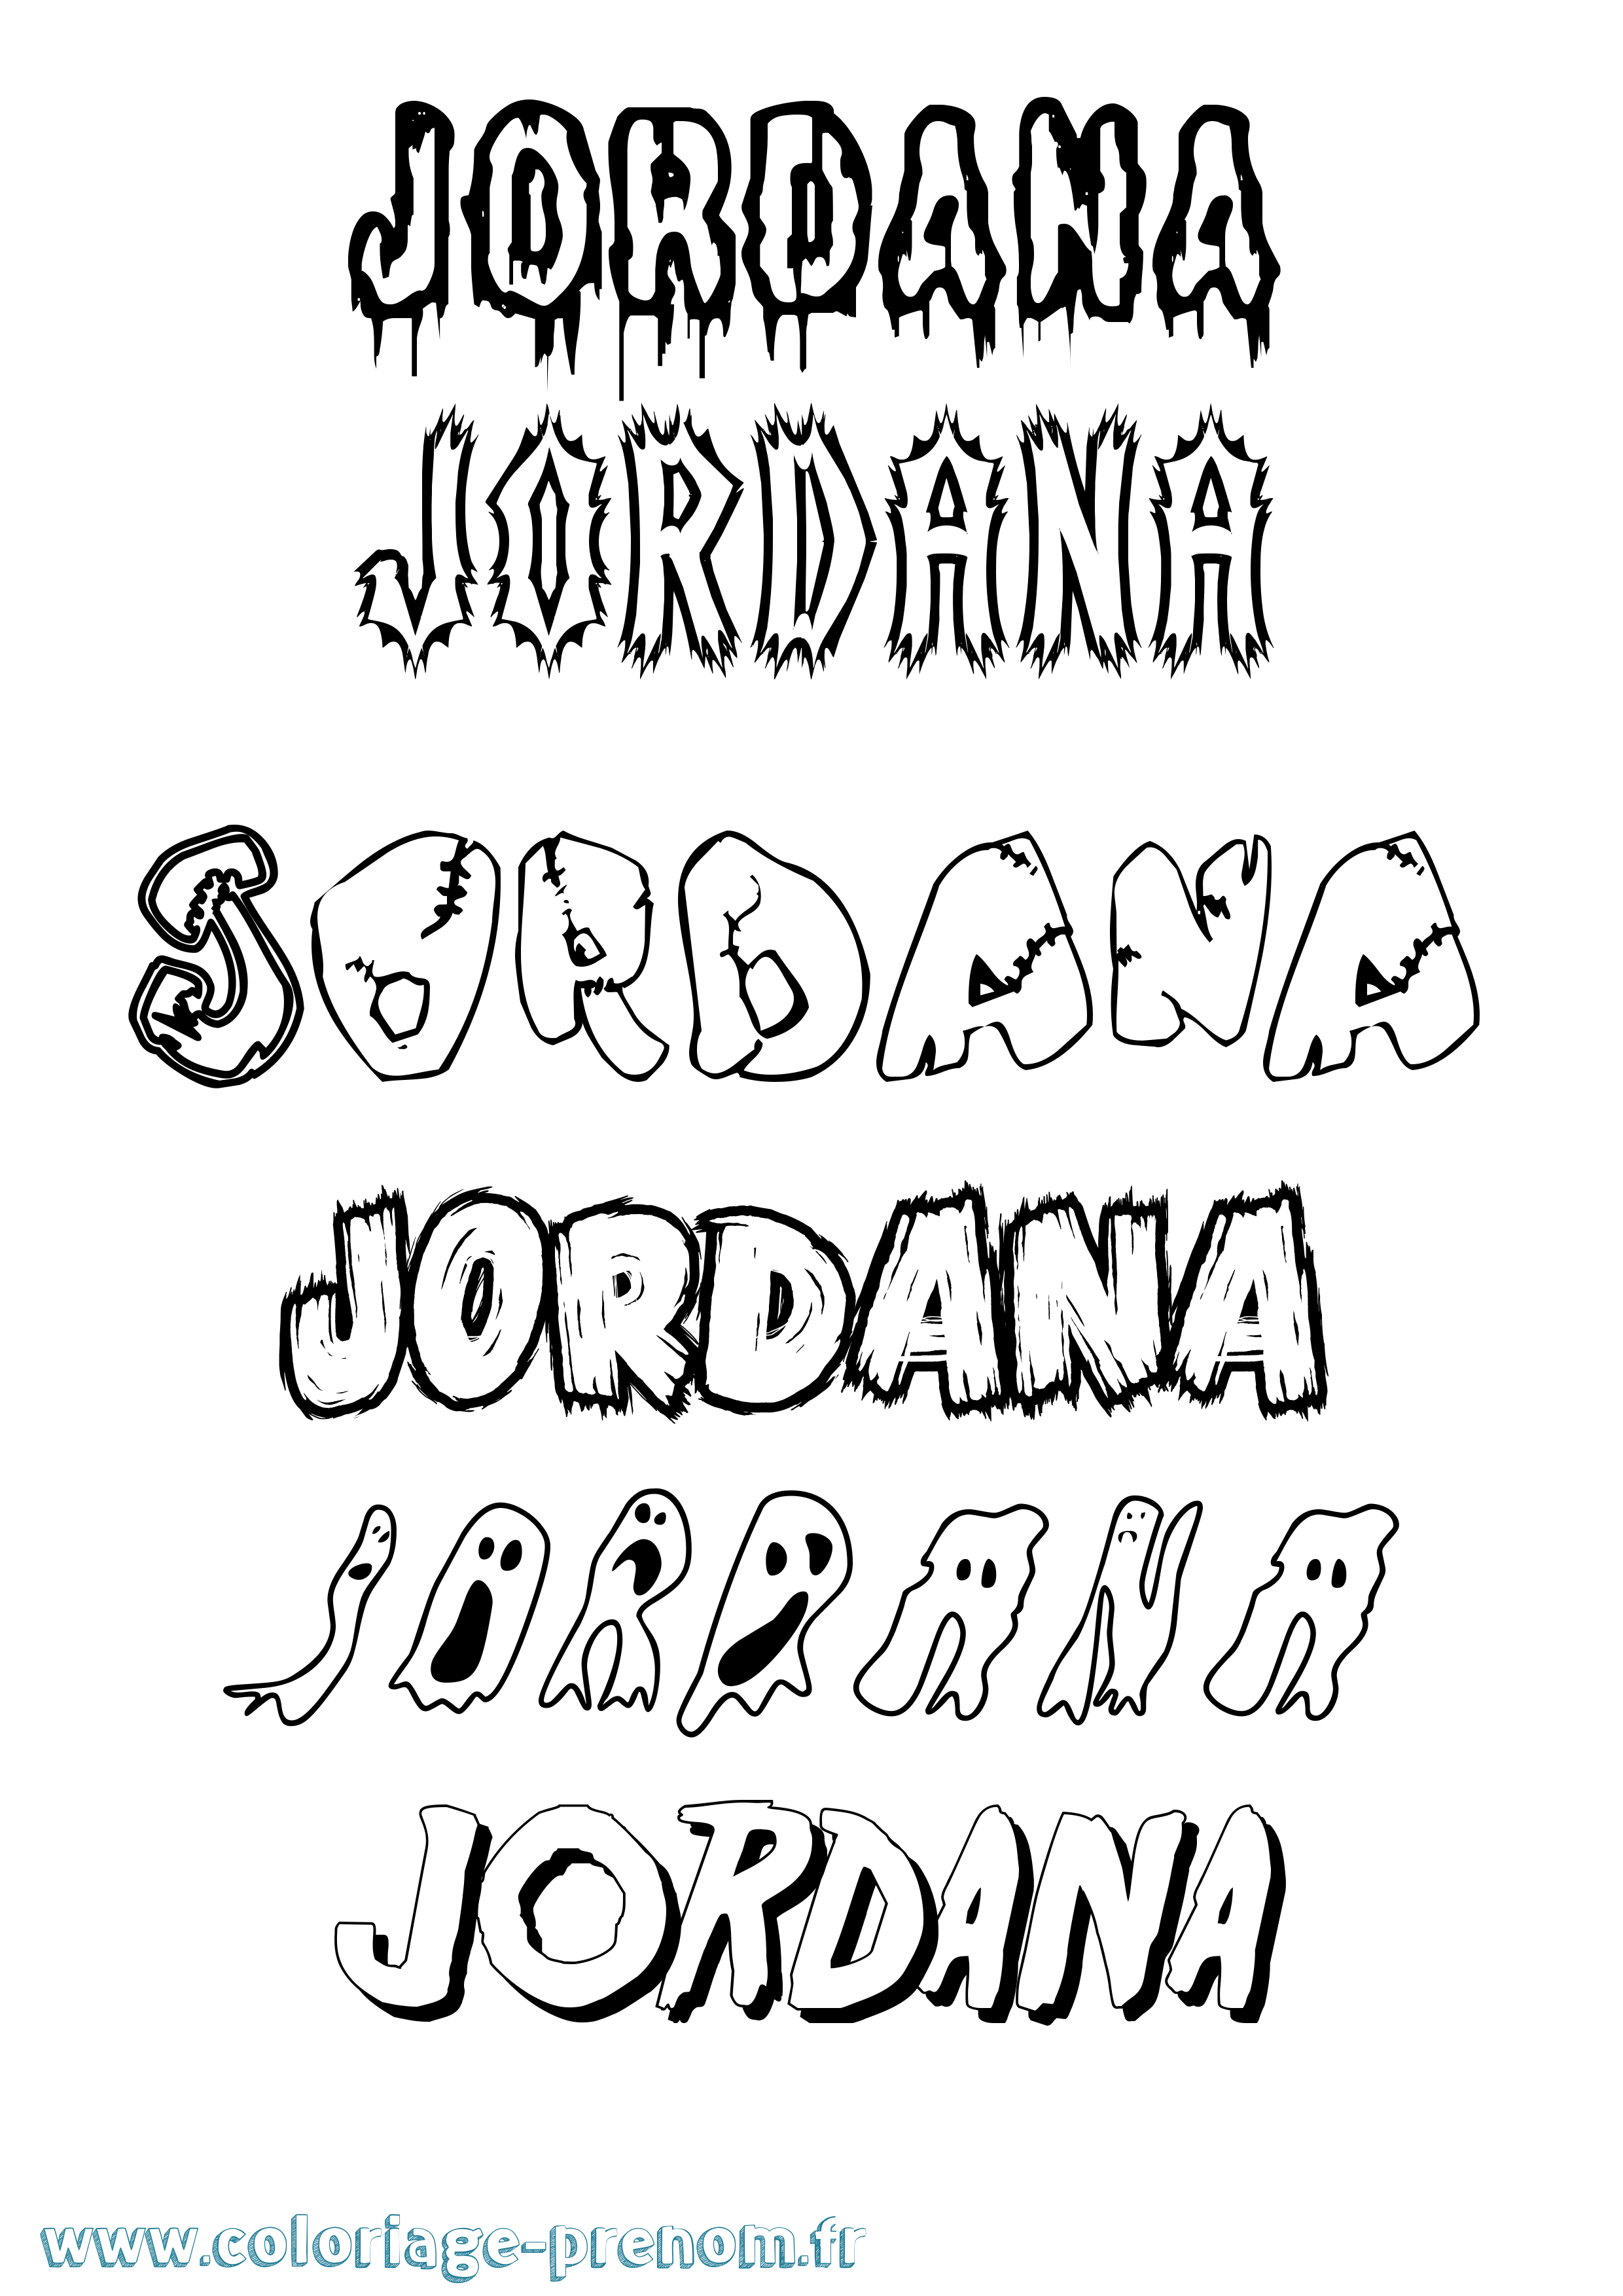 Coloriage prénom Jordana Frisson